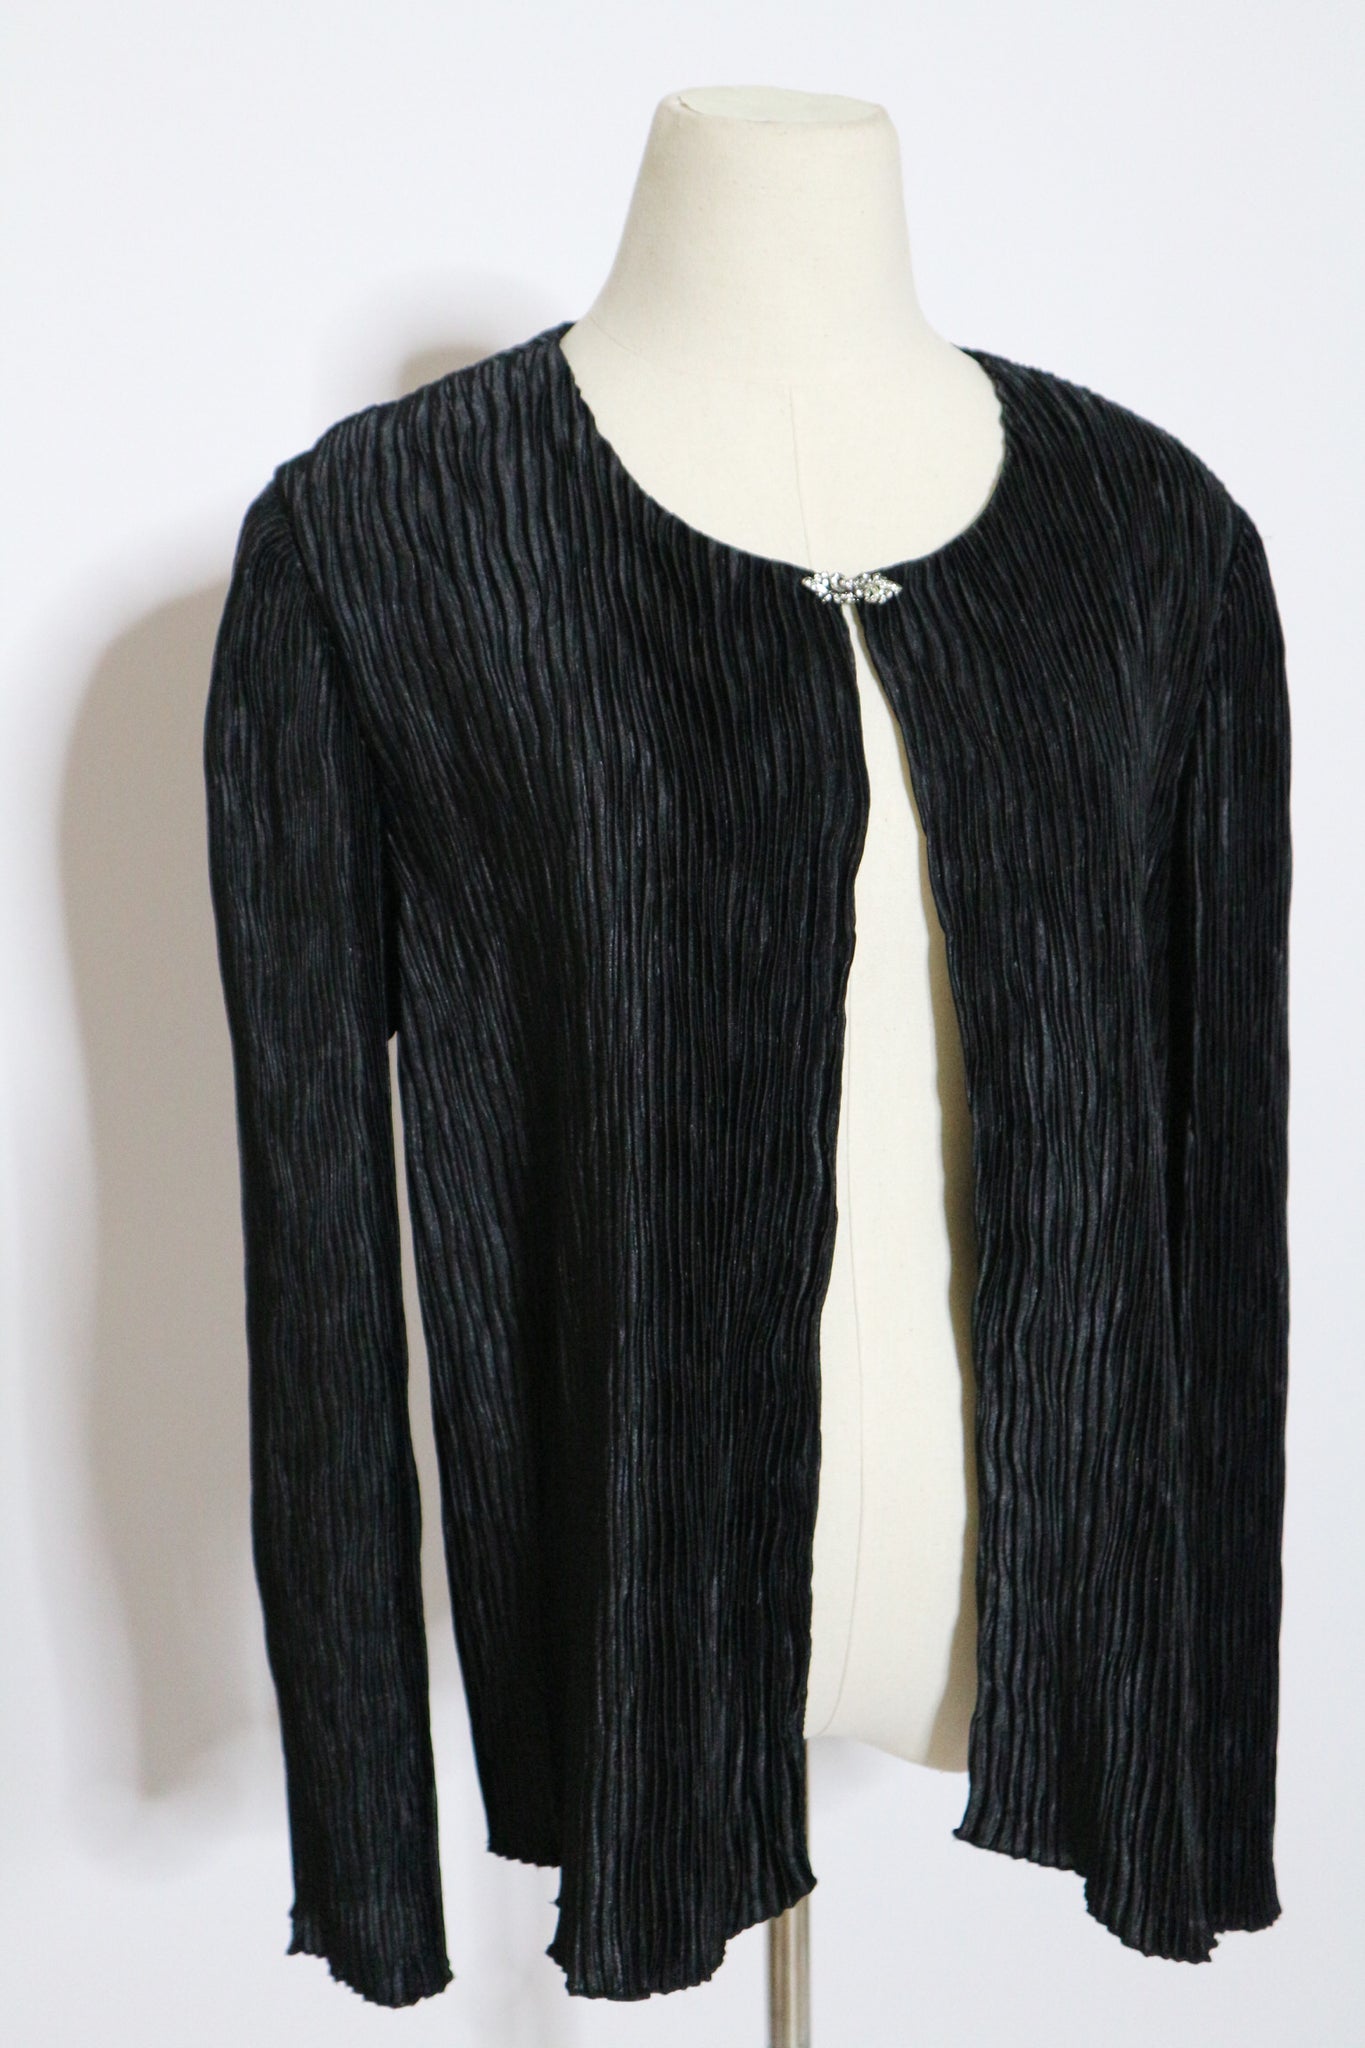 Vintage Black with Rhinestone Clasp Jacket- Size Medium/Large